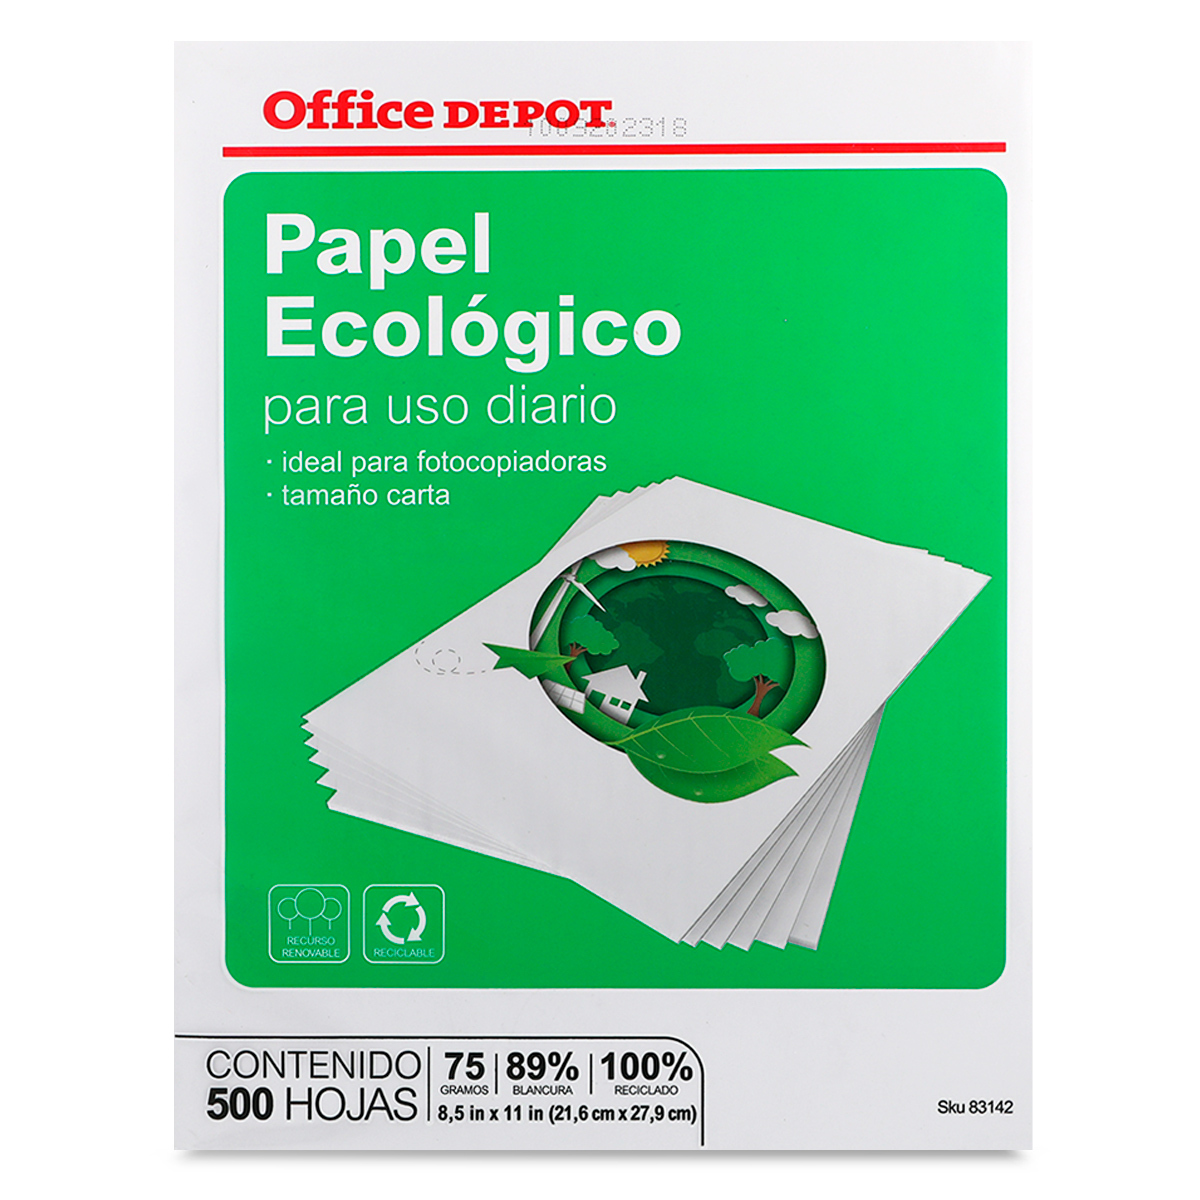 Papel Reciclado Carta Office Depot Ecológico Paquete 500 hojas blancas